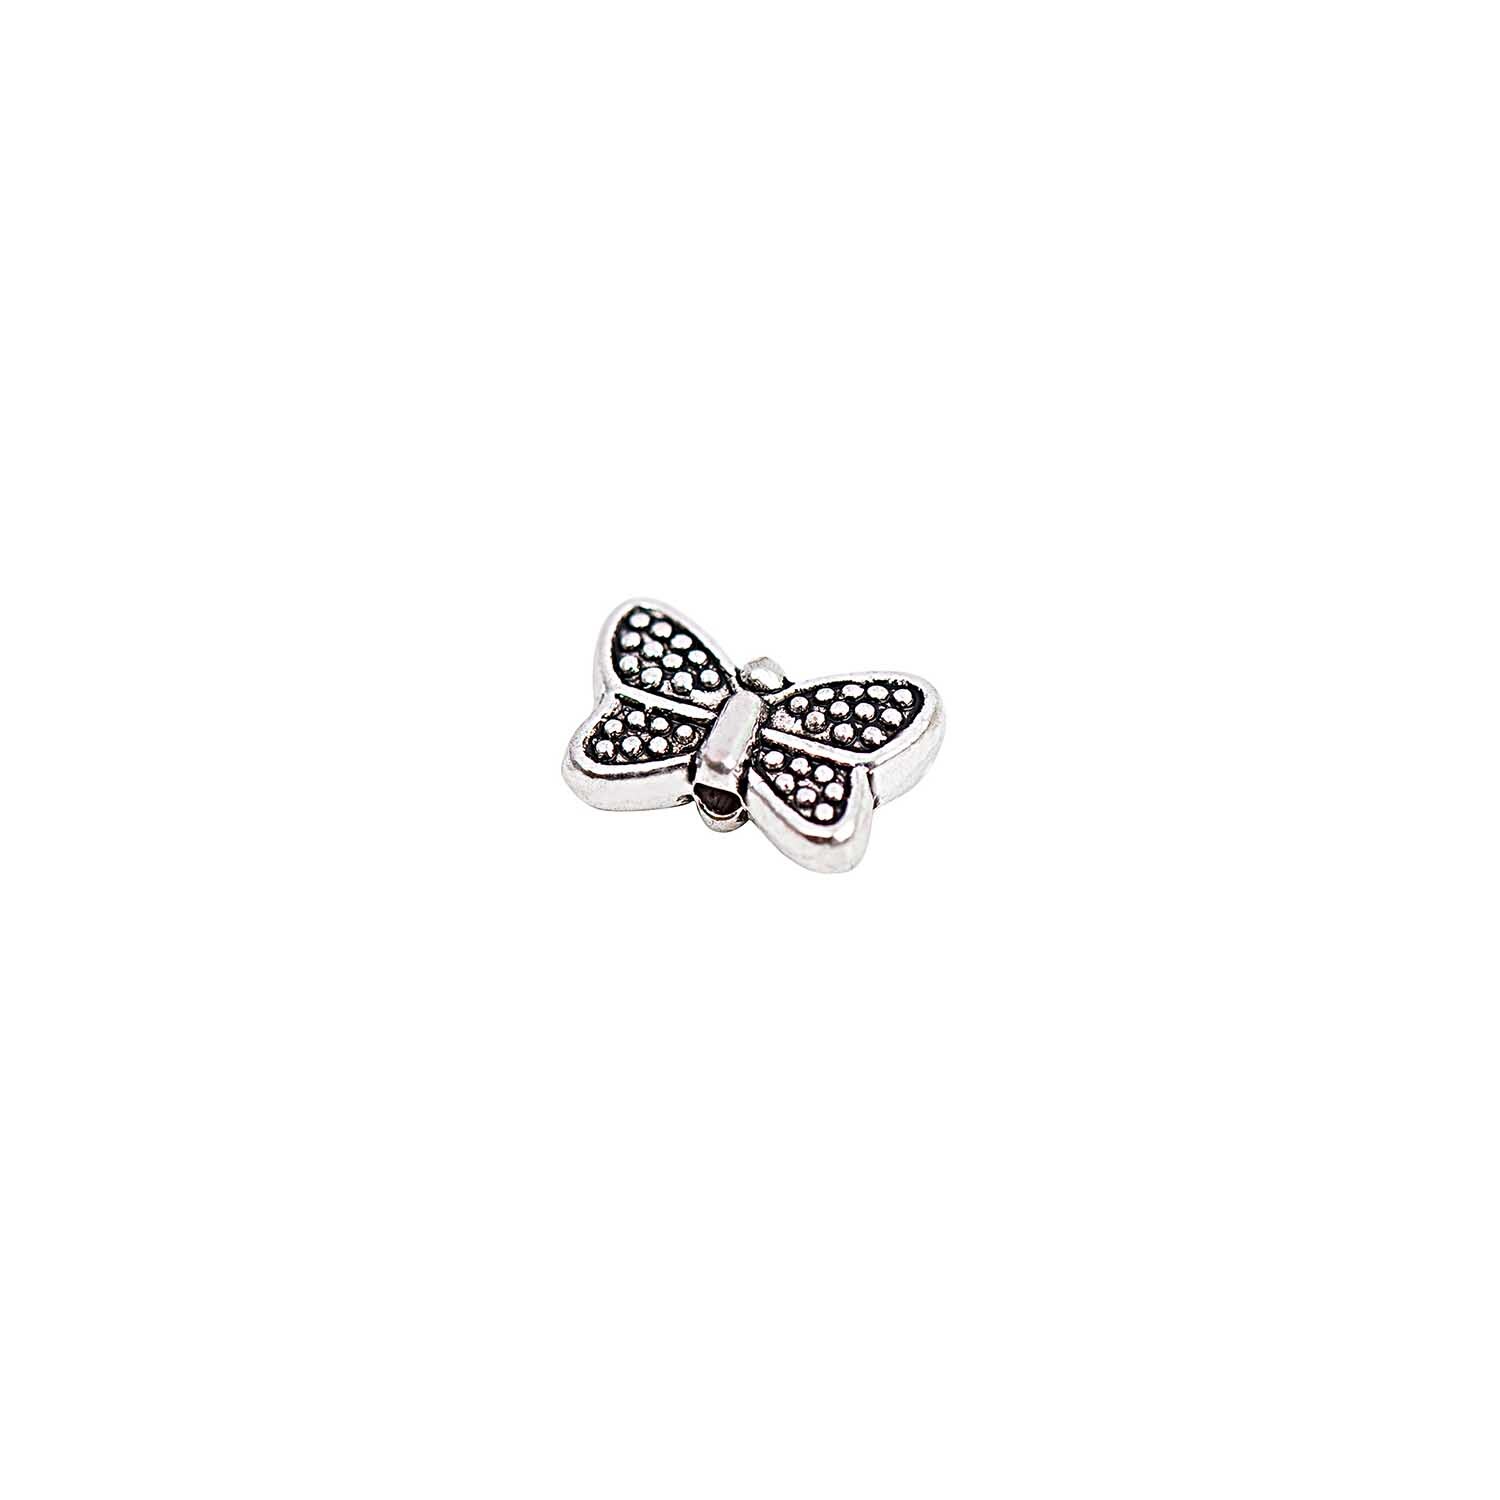 Schmetterlinge klein silber 10x3,5mm 20 Stück